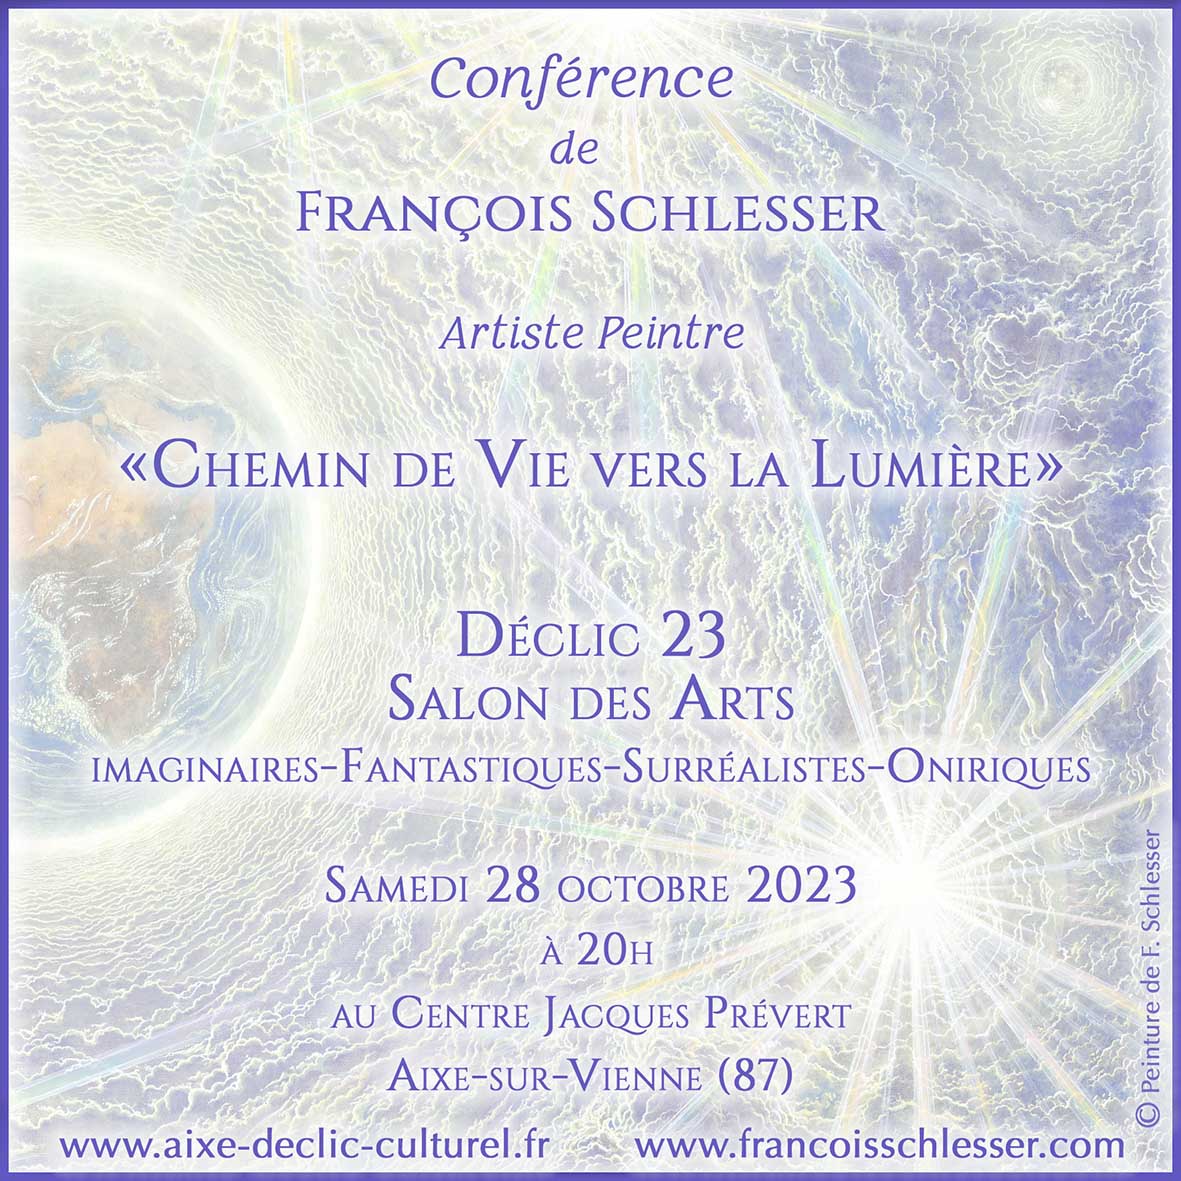 Conférence de François Schlesser "Chemin de vie vers la lumière" à Déclic 23 Salon des Arts - 28 octobre 2023 à 20h - Aixe sur Vienne